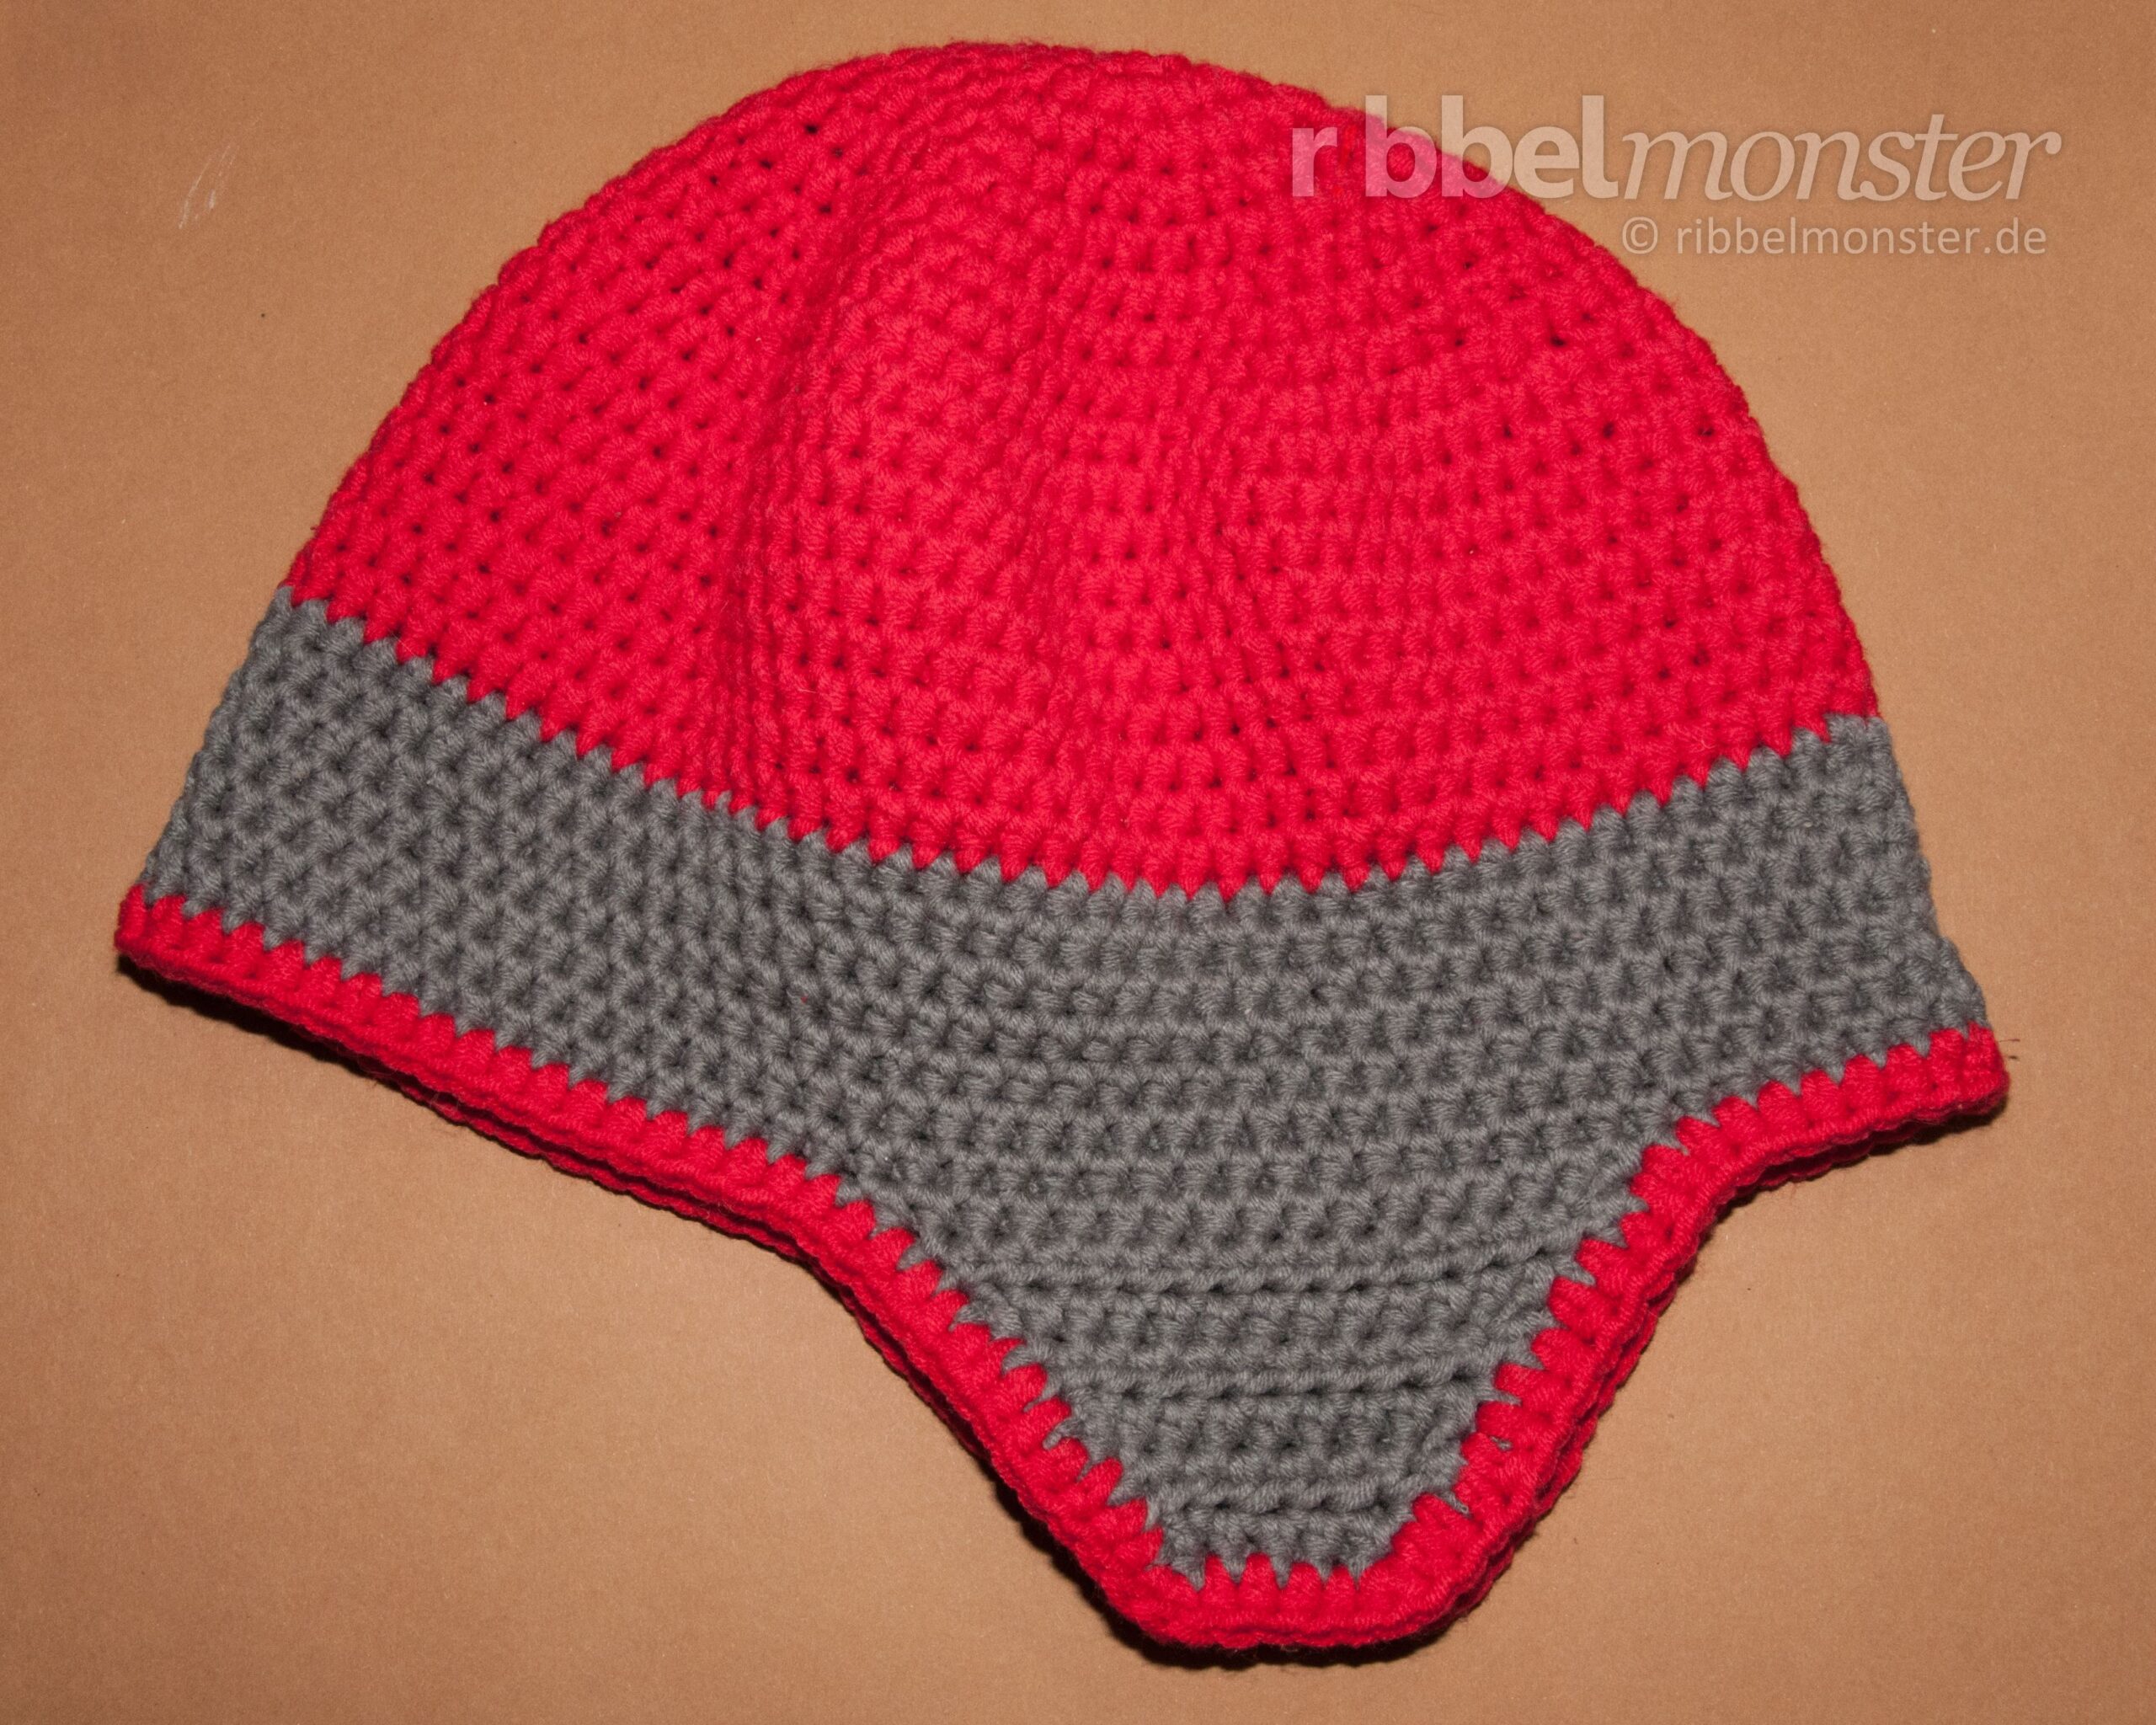 Crochet Hats – Crochet Ear Flaps